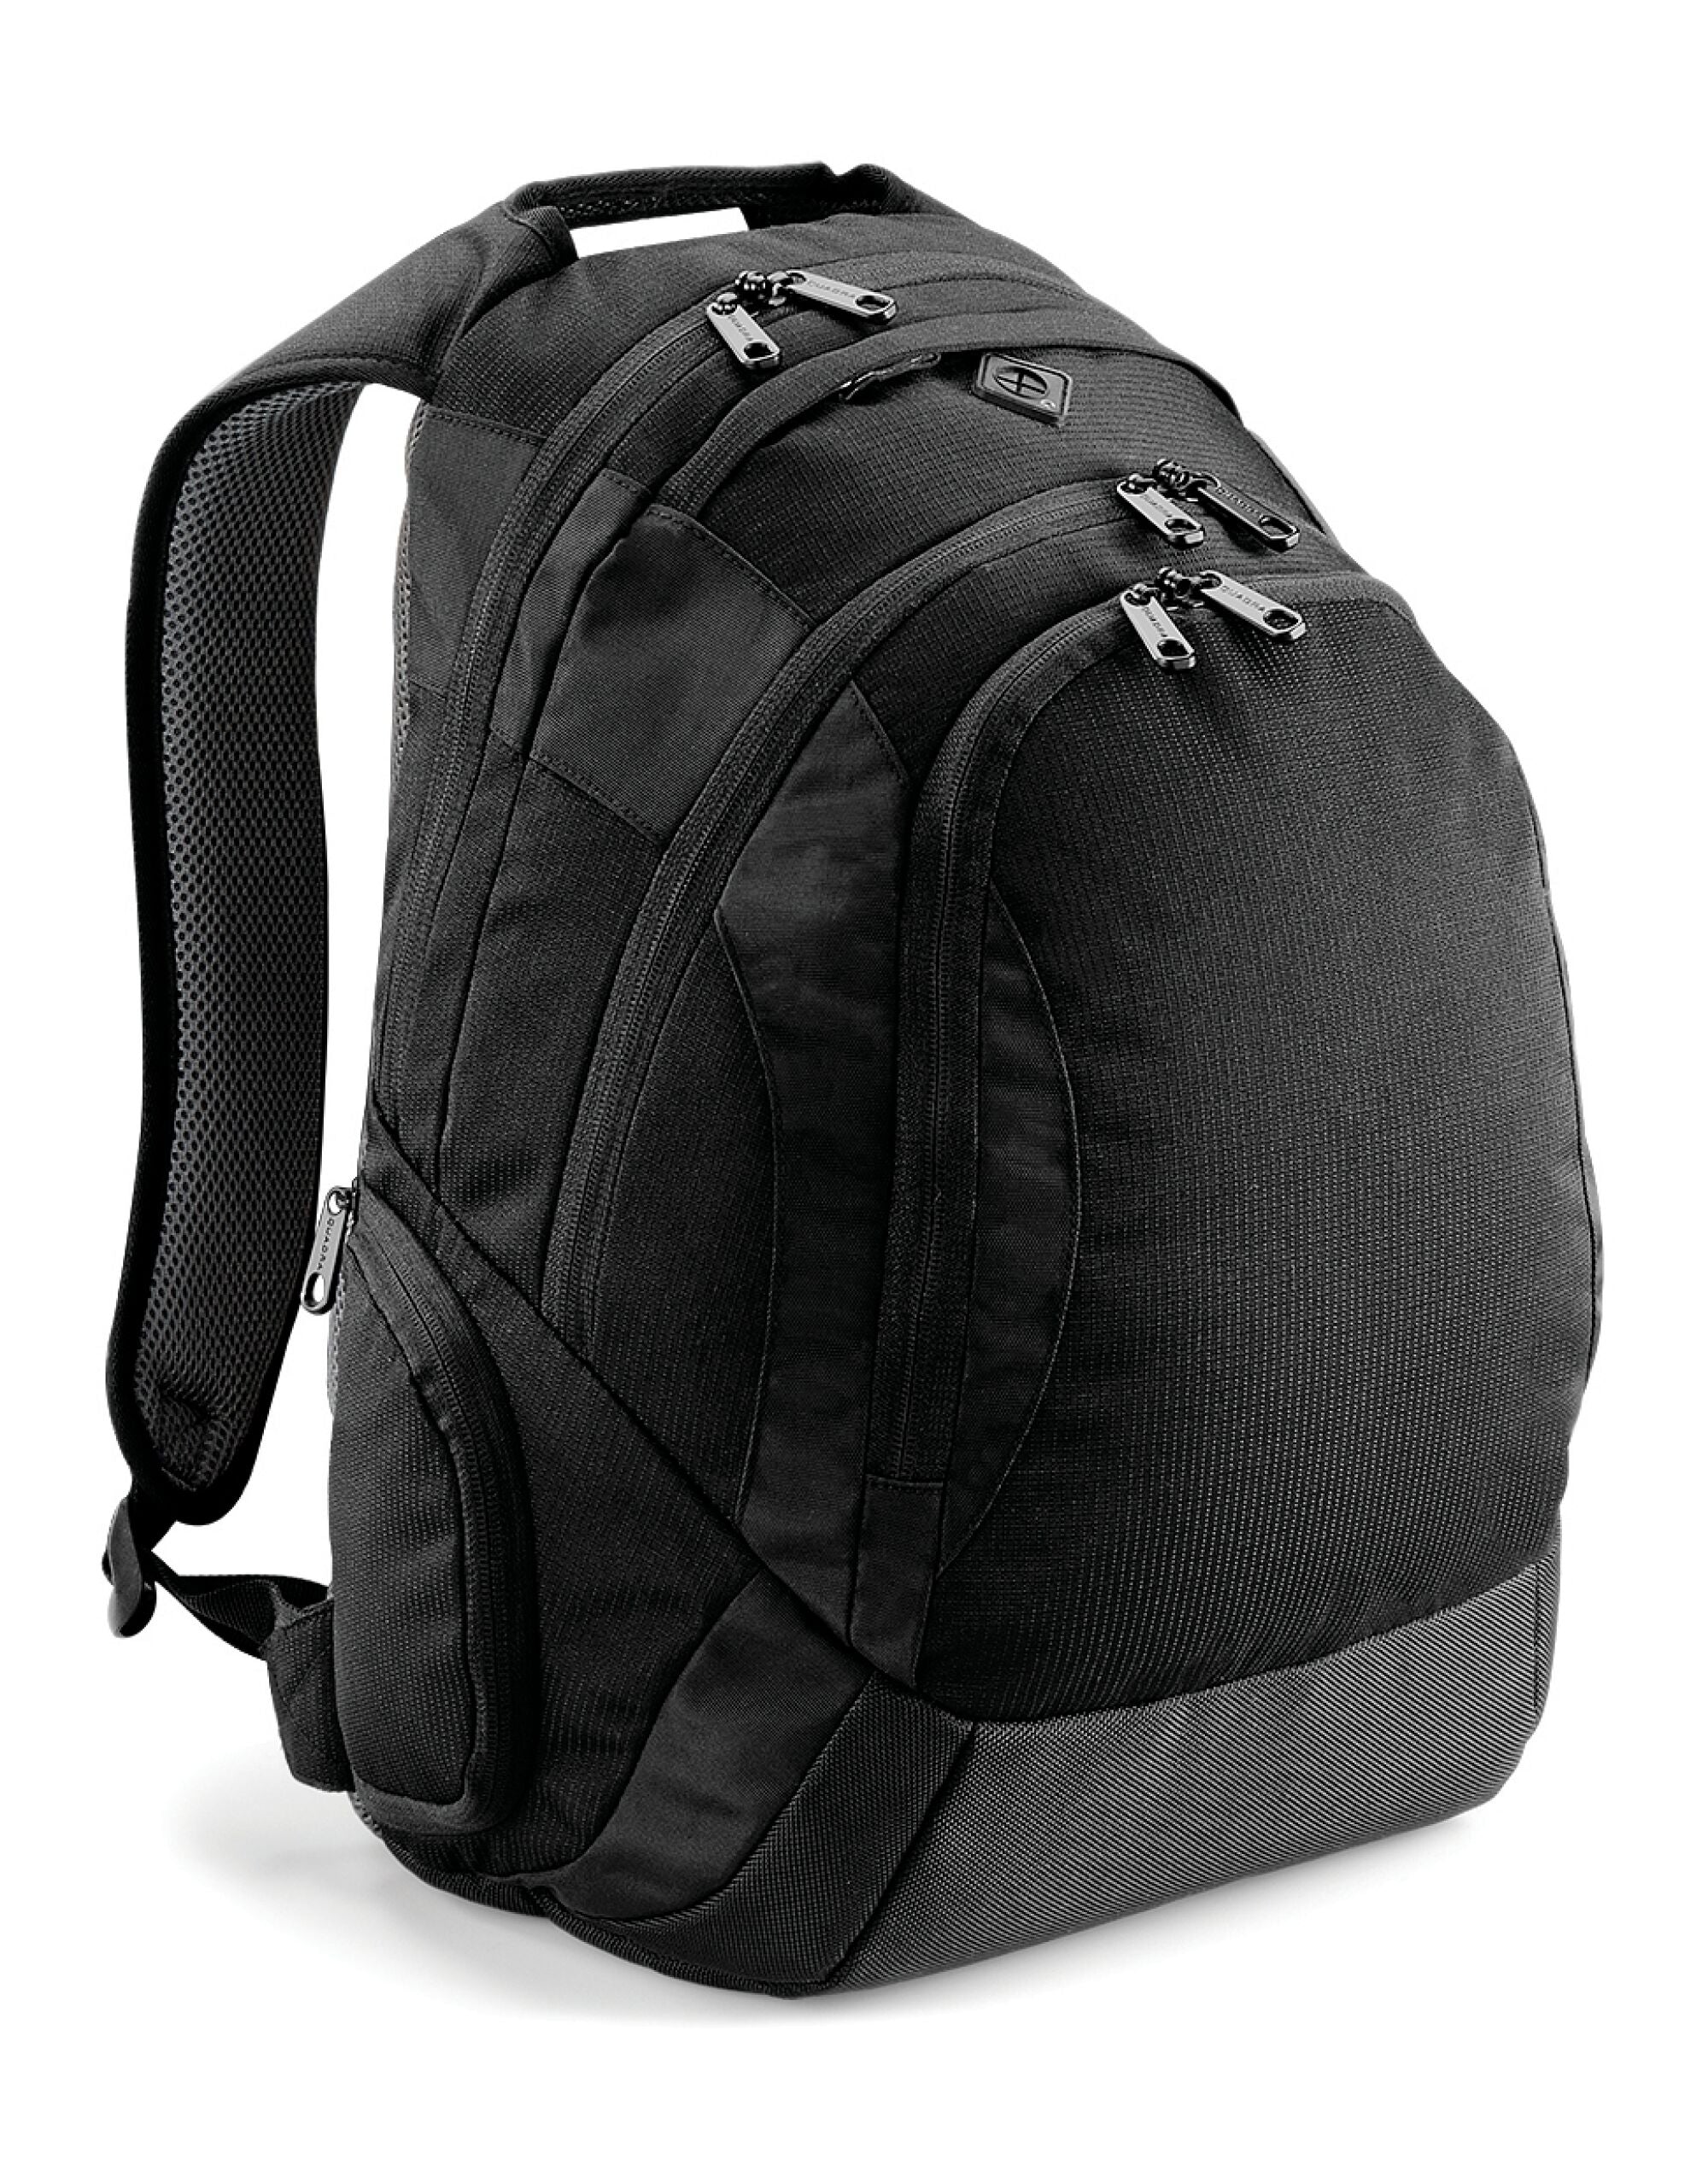 Quadra Vessel™ Laptop Backpack Padded adjustable shoulder straps (QD905)